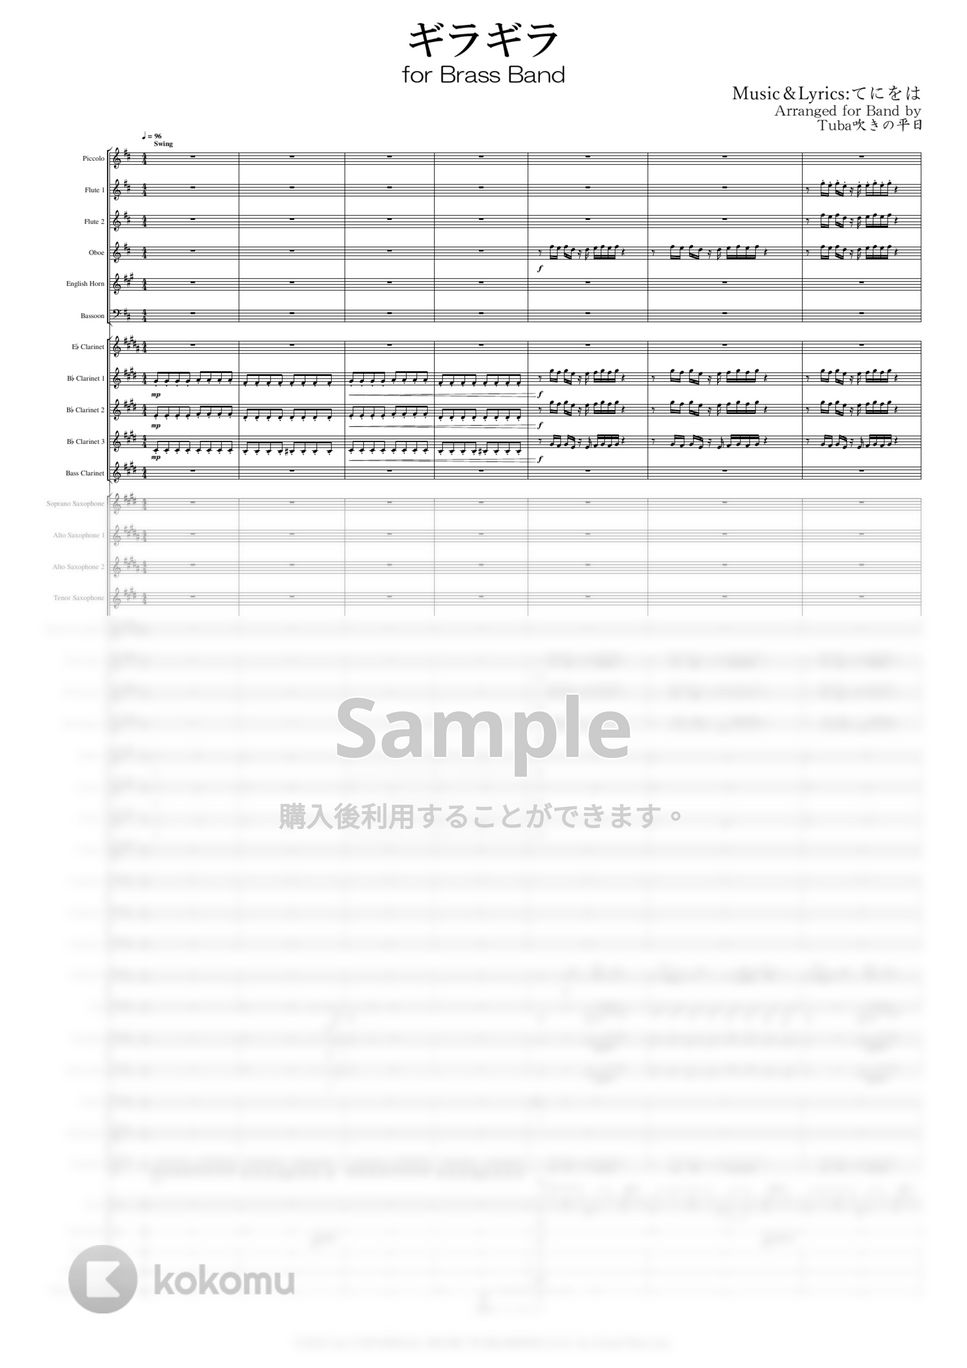 Ado - ギラギラ (吹奏楽) by Tuba吹きの平日